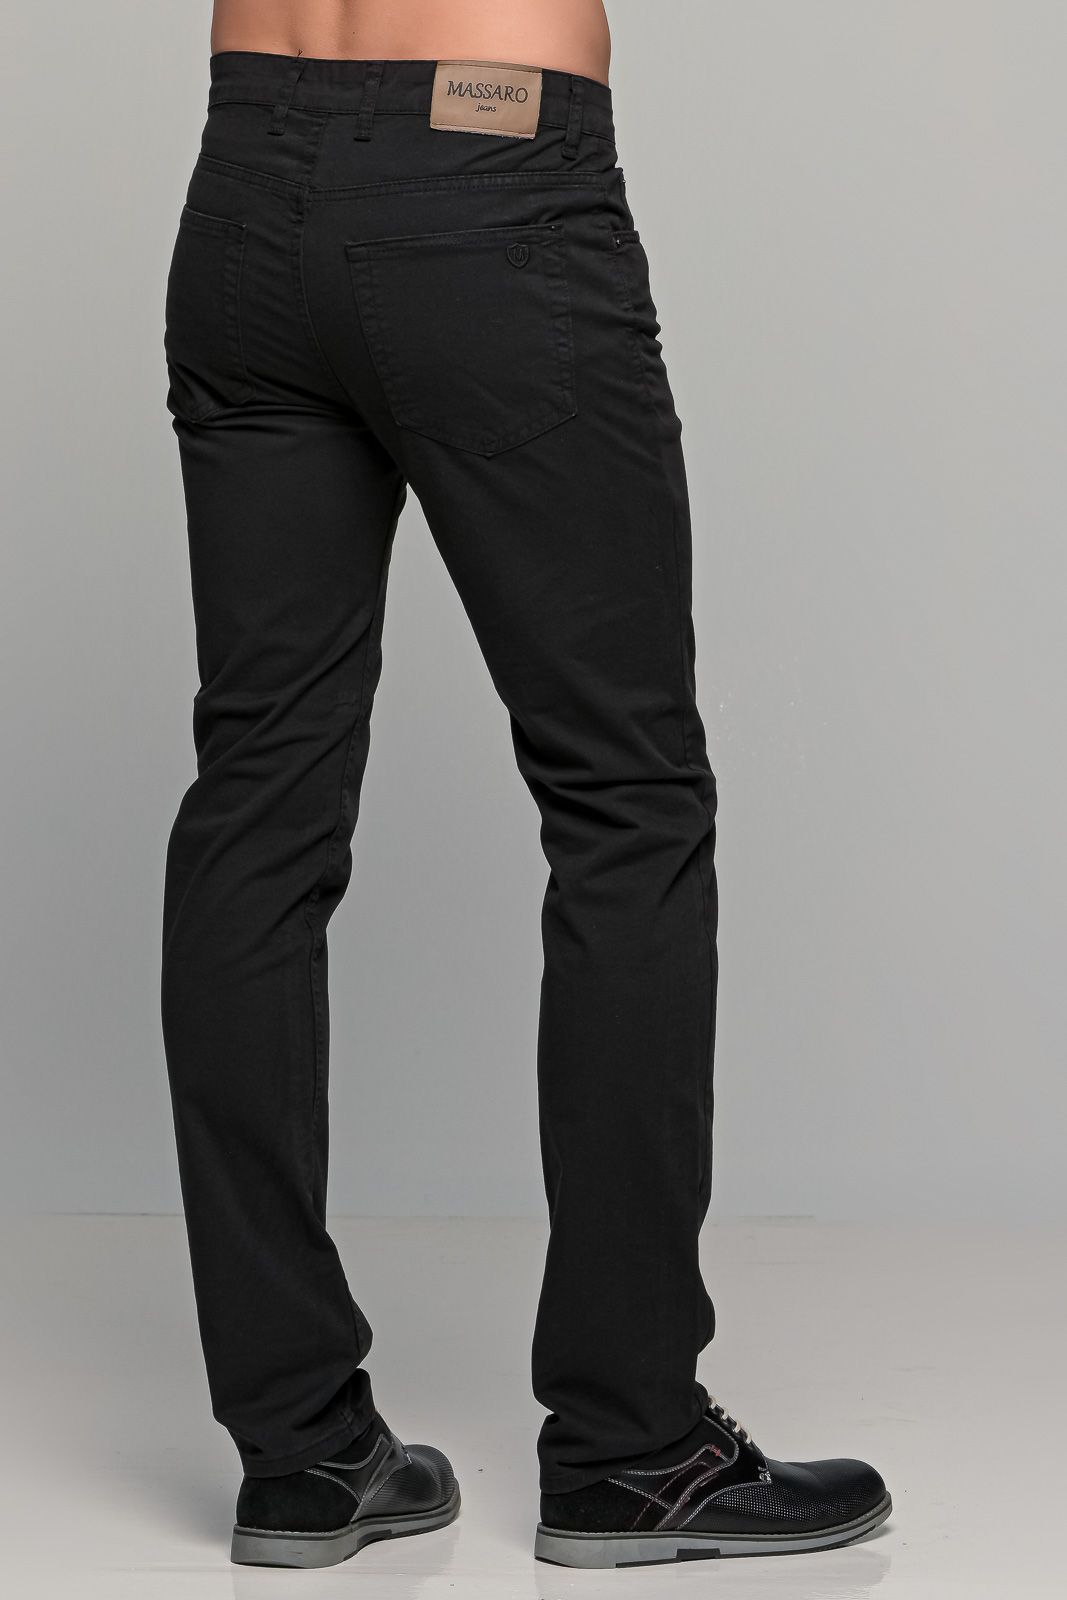 Χειμερινό ανδρικό παντελόνι πεντάτσεπο MASSARO μαύρο - Straight fit